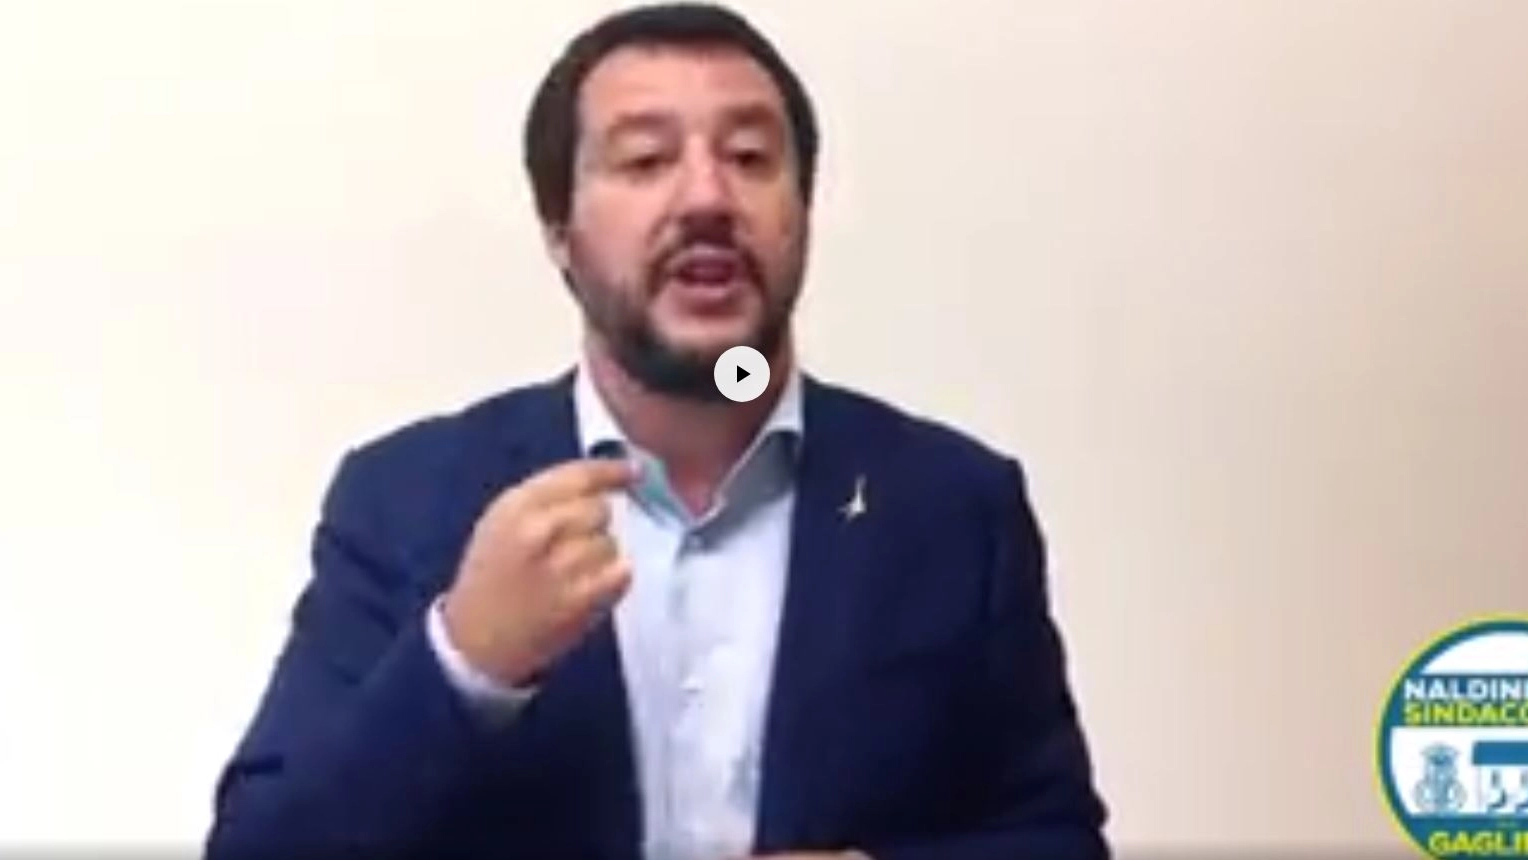 Il video di Salvini per sostenere Naldini